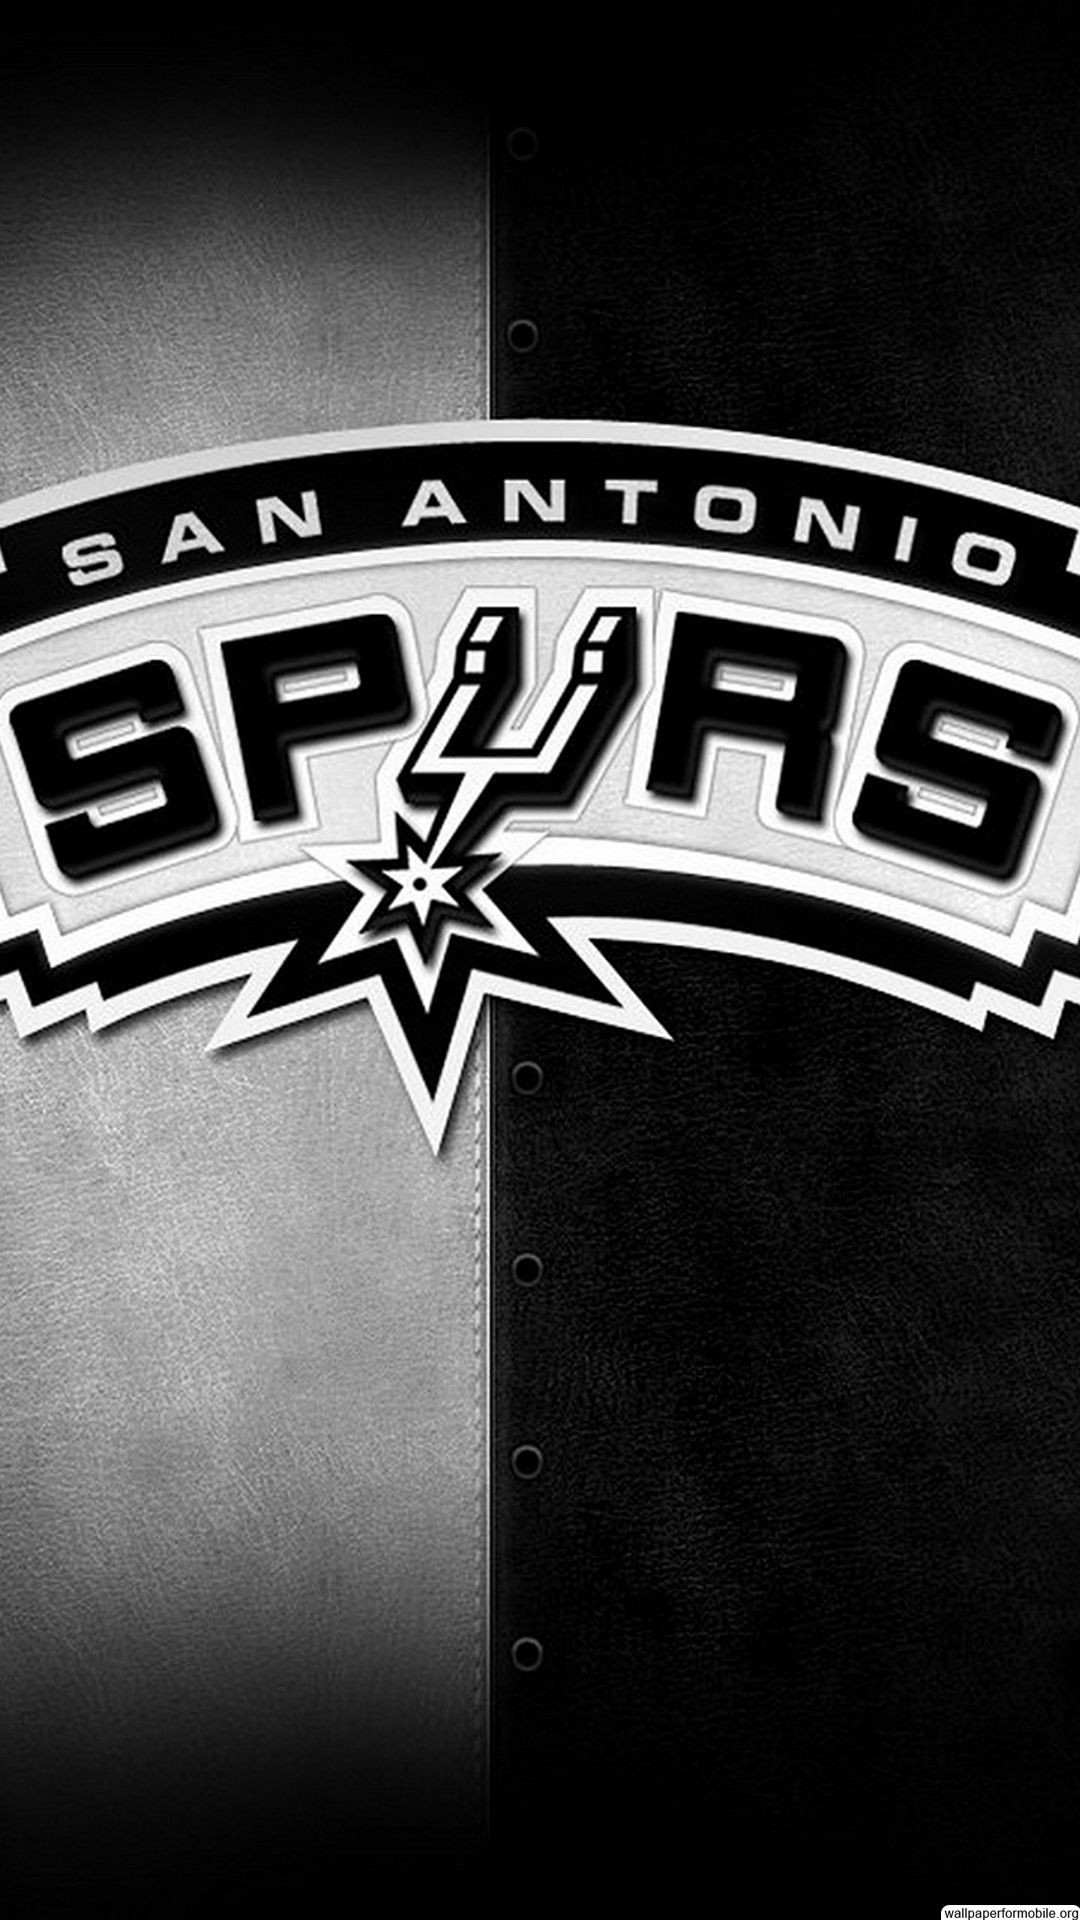 San Antonio Spurs Wallpaper 2018 (56+ images)